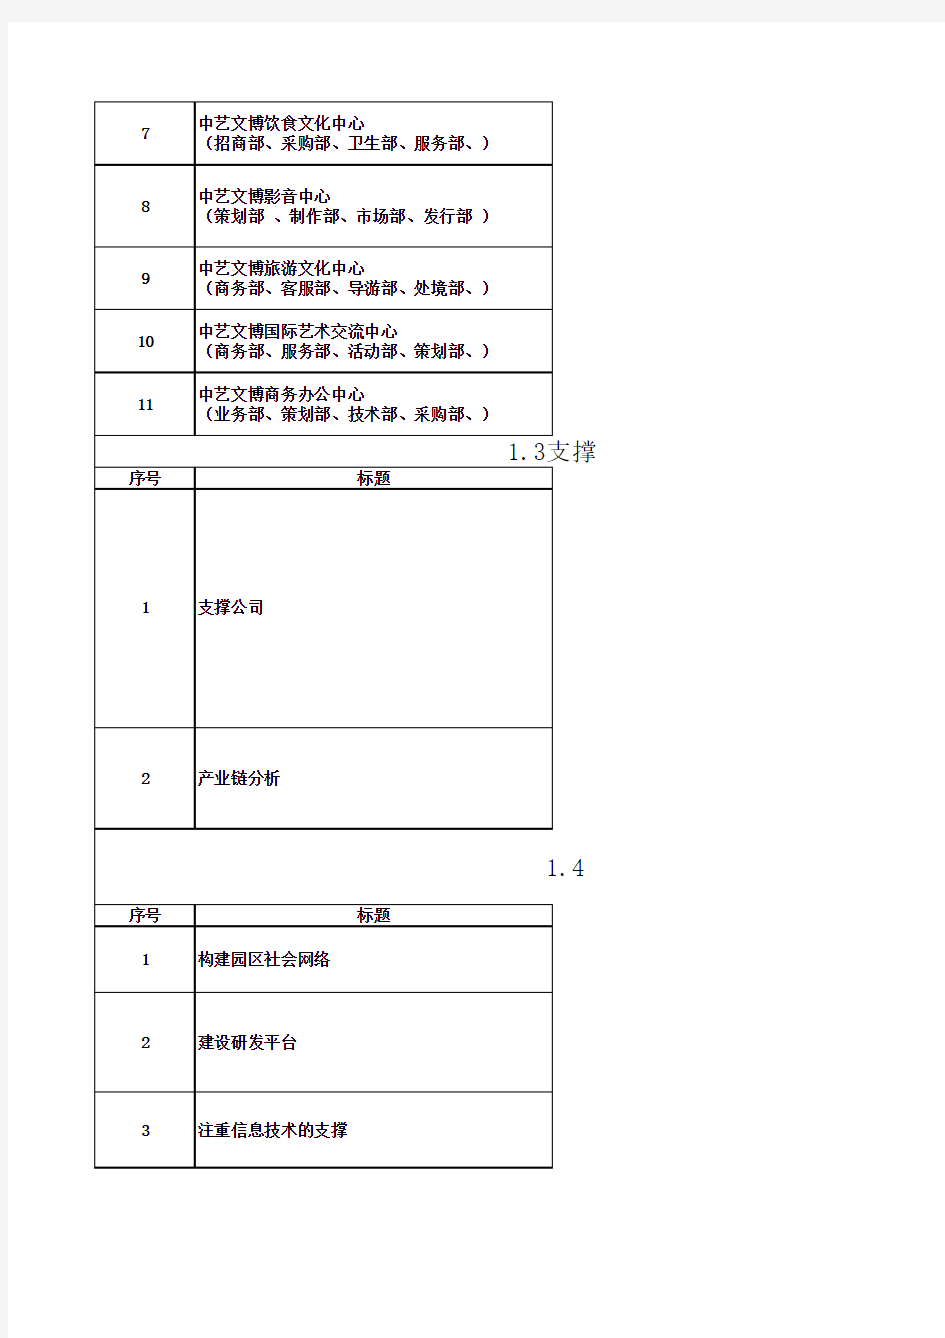 雅昌集团介绍及成功园区产业链分析报告2013.4.13